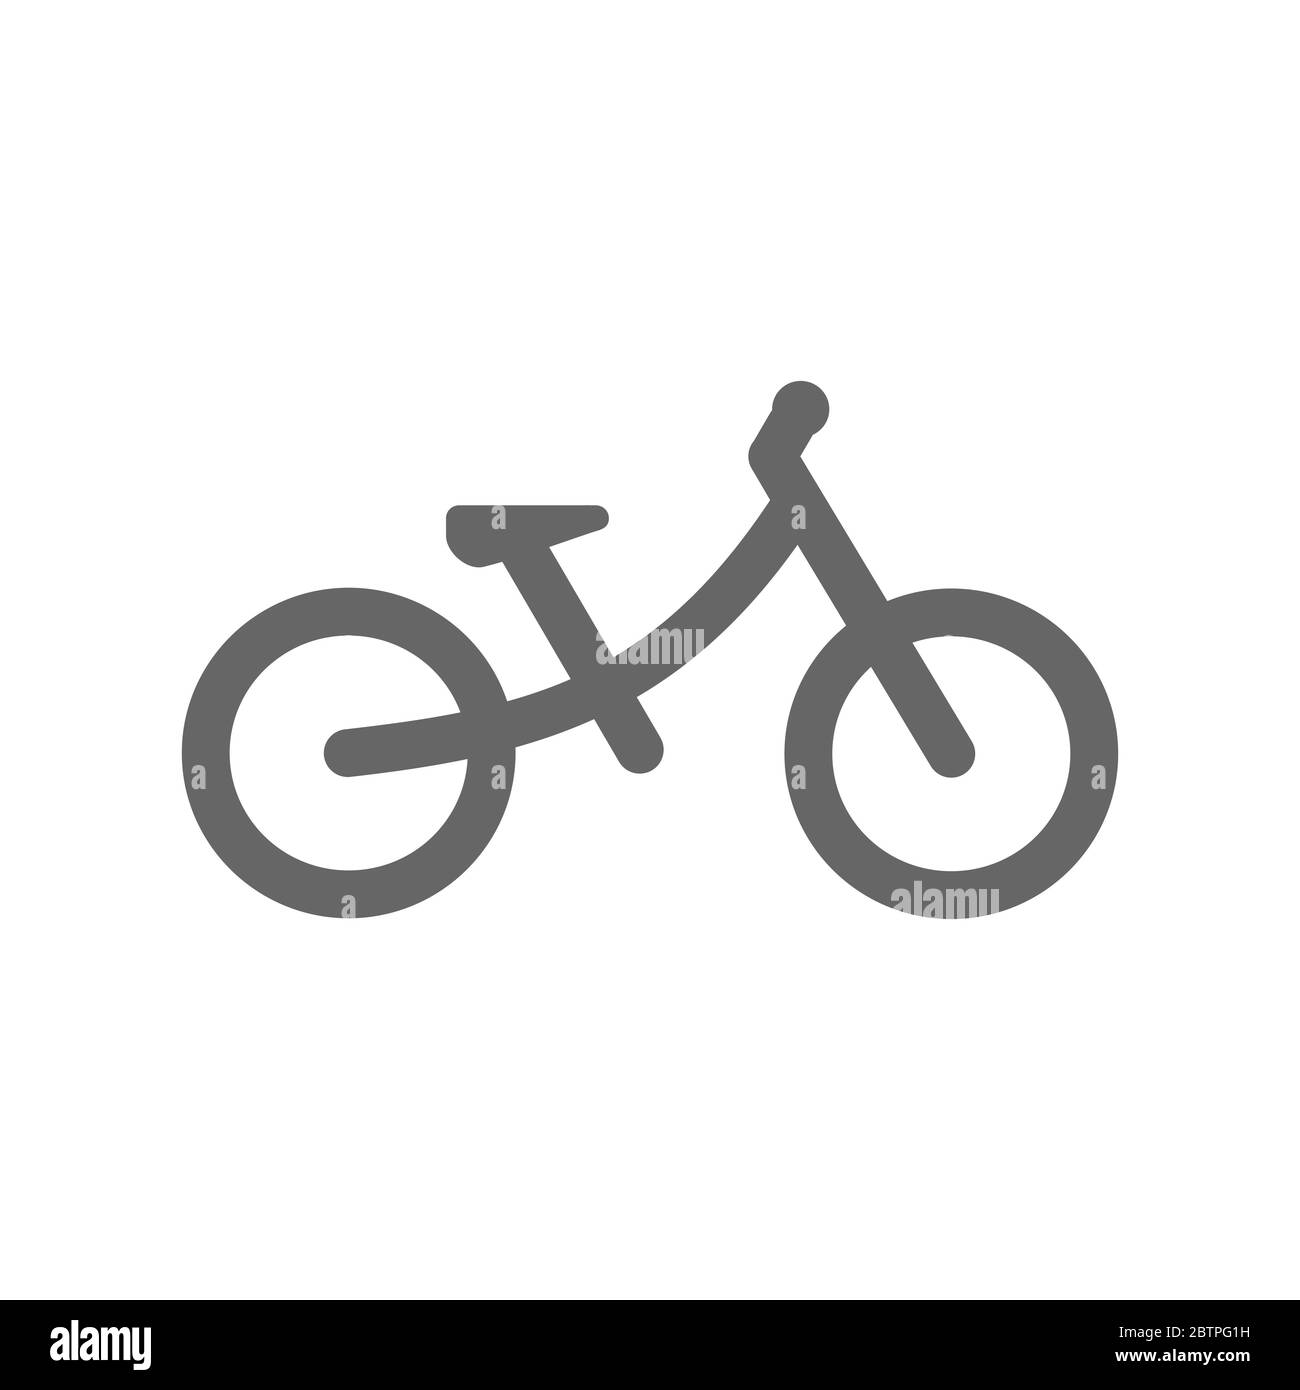 Symbol für das Laufrad für Kinder. Ein Fahrrad ohne Pedale für Kinder oder Kleinkinder. Symbol für Fahrradlinie drücken. Grau auf weißem Hintergrund. Vektorgrafik, flach. Stock Vektor